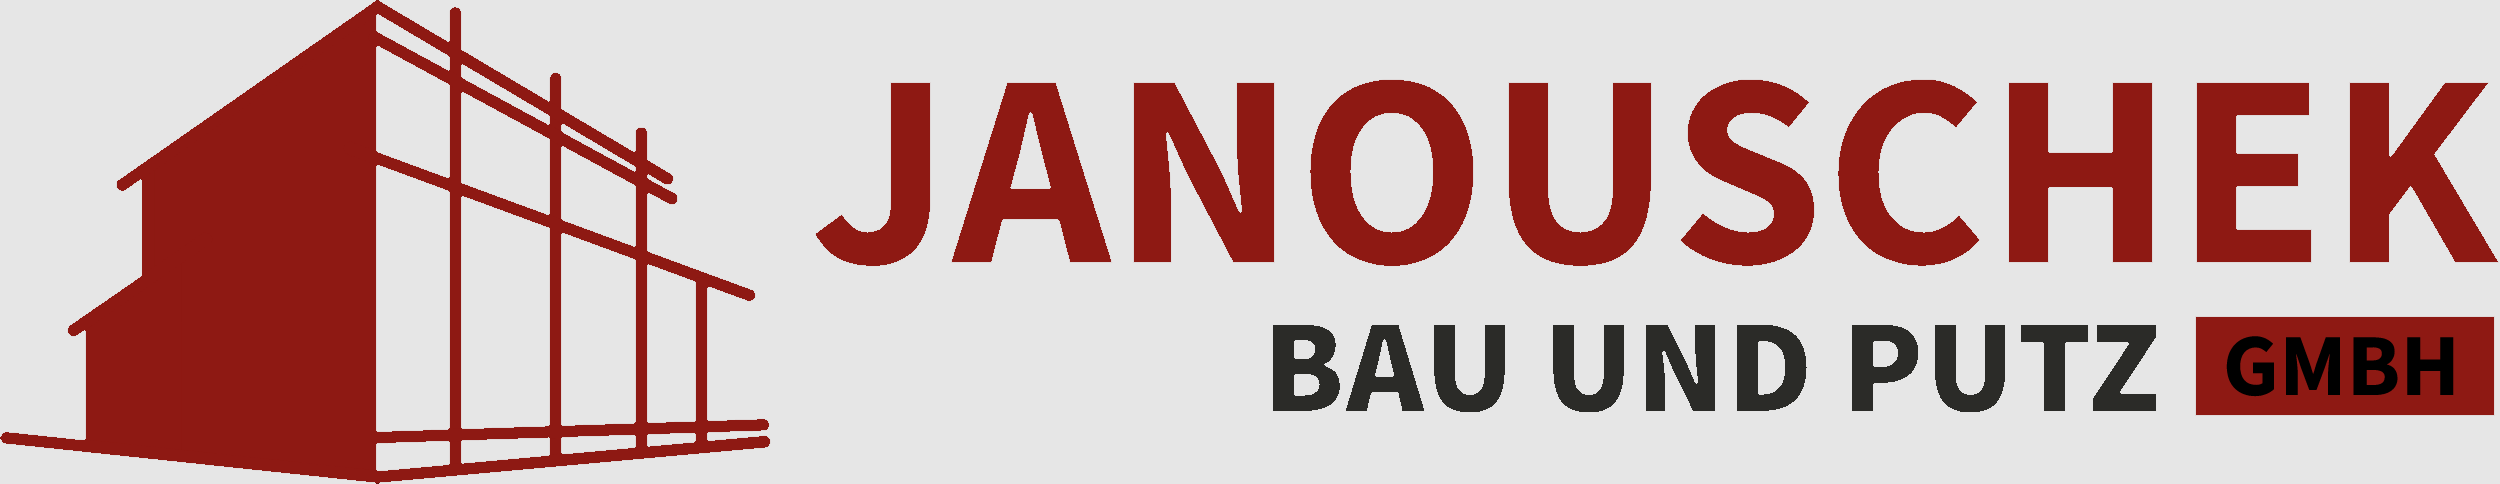 Janouschek GmbH Bau und Putz